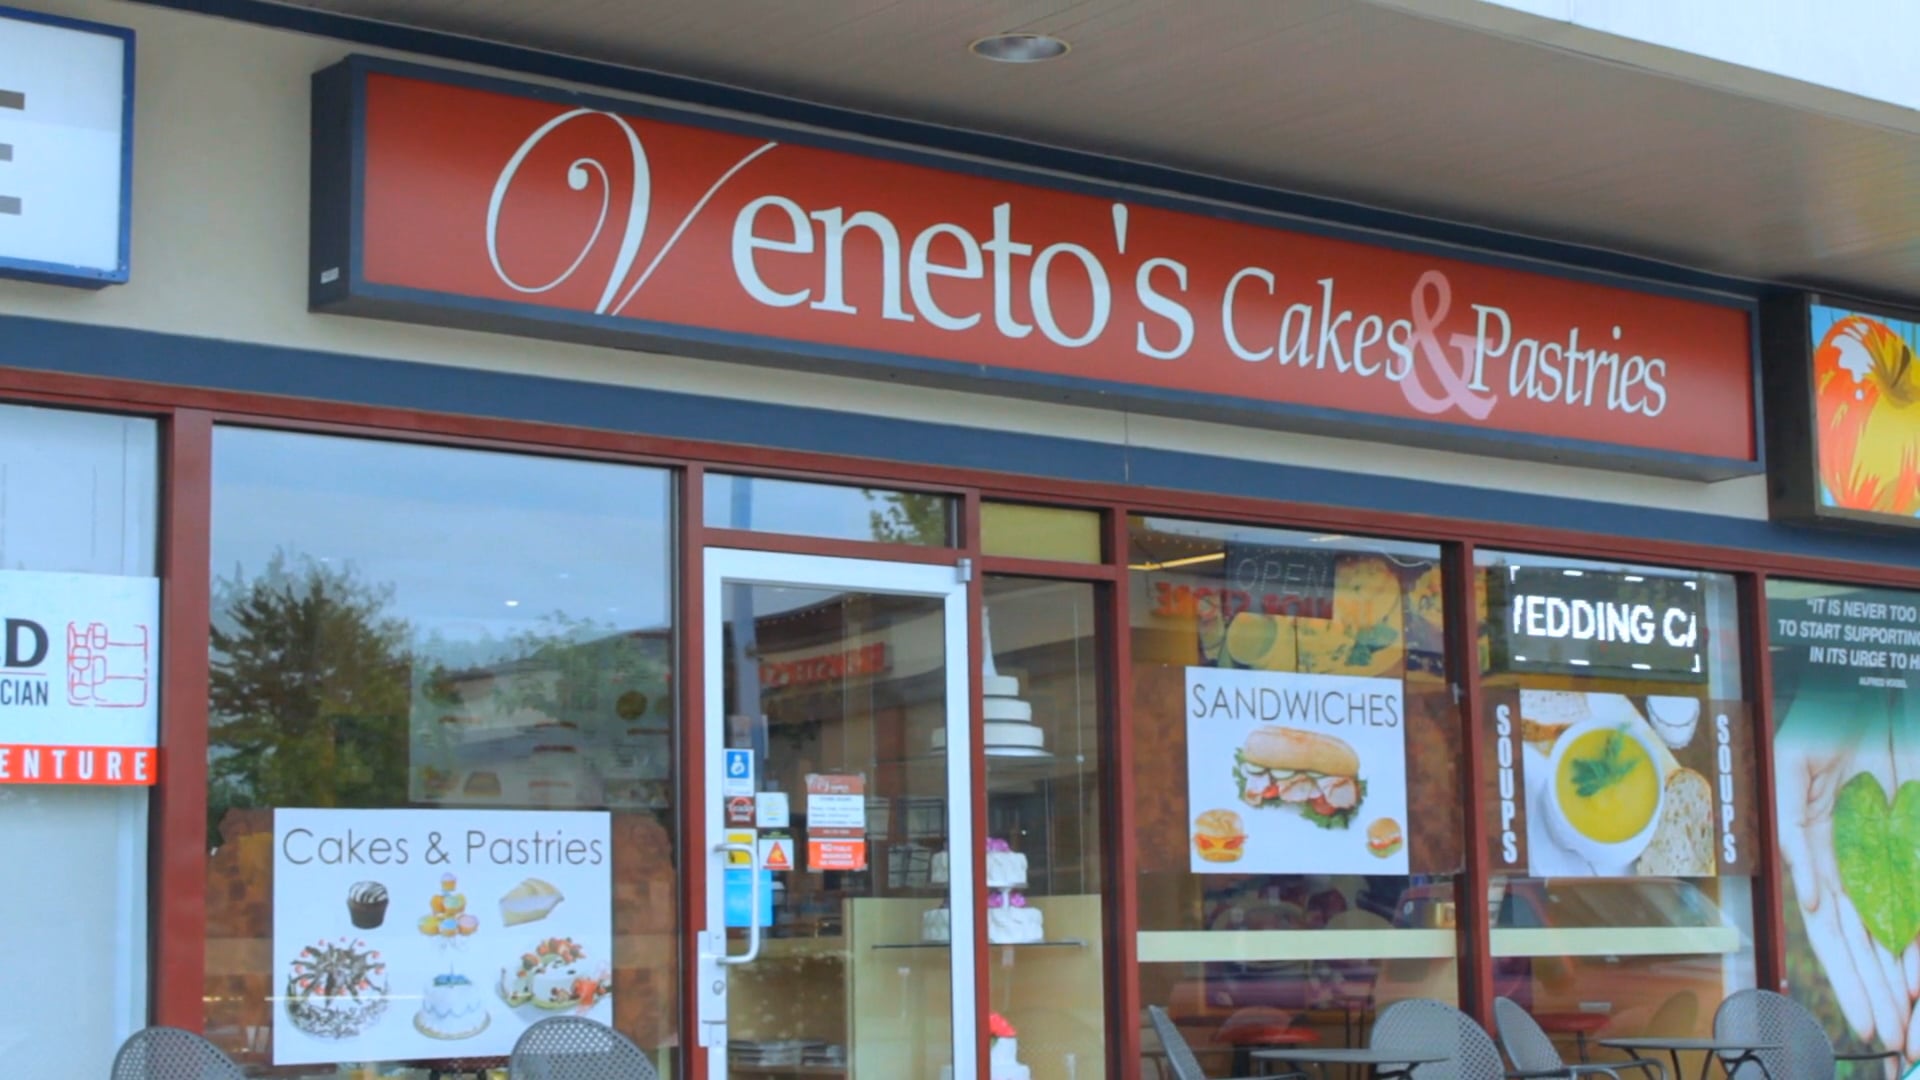 Veneto's Cakes & Pastries Promo